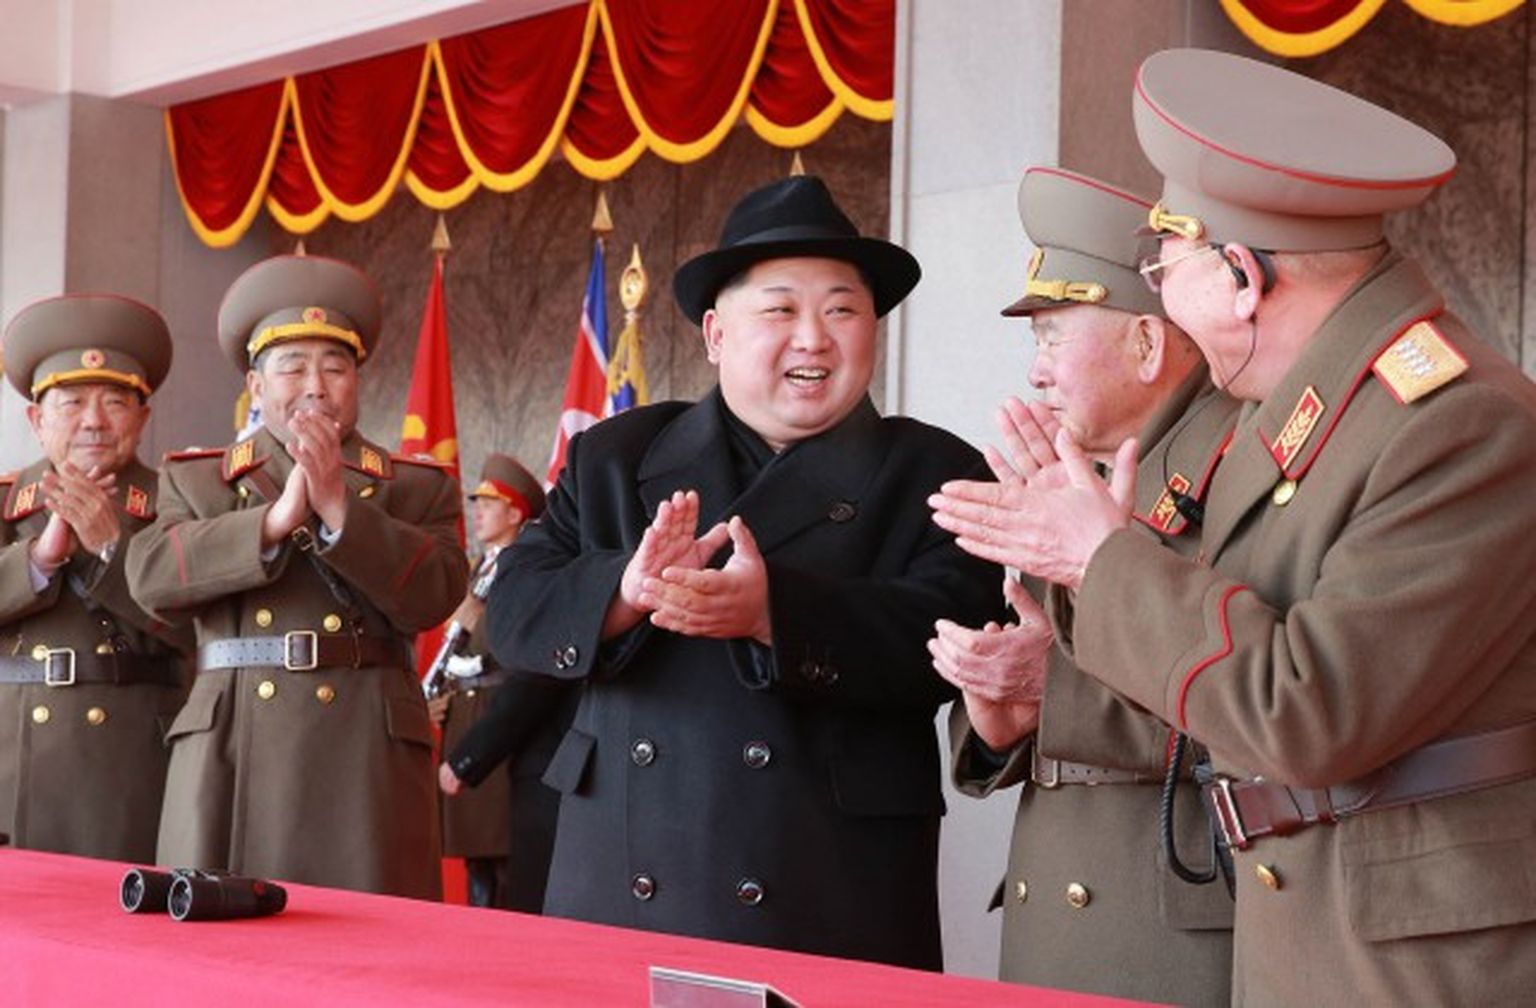 Ziemeļkorejas līderis Kims Čenuns un valsts militārpersonas